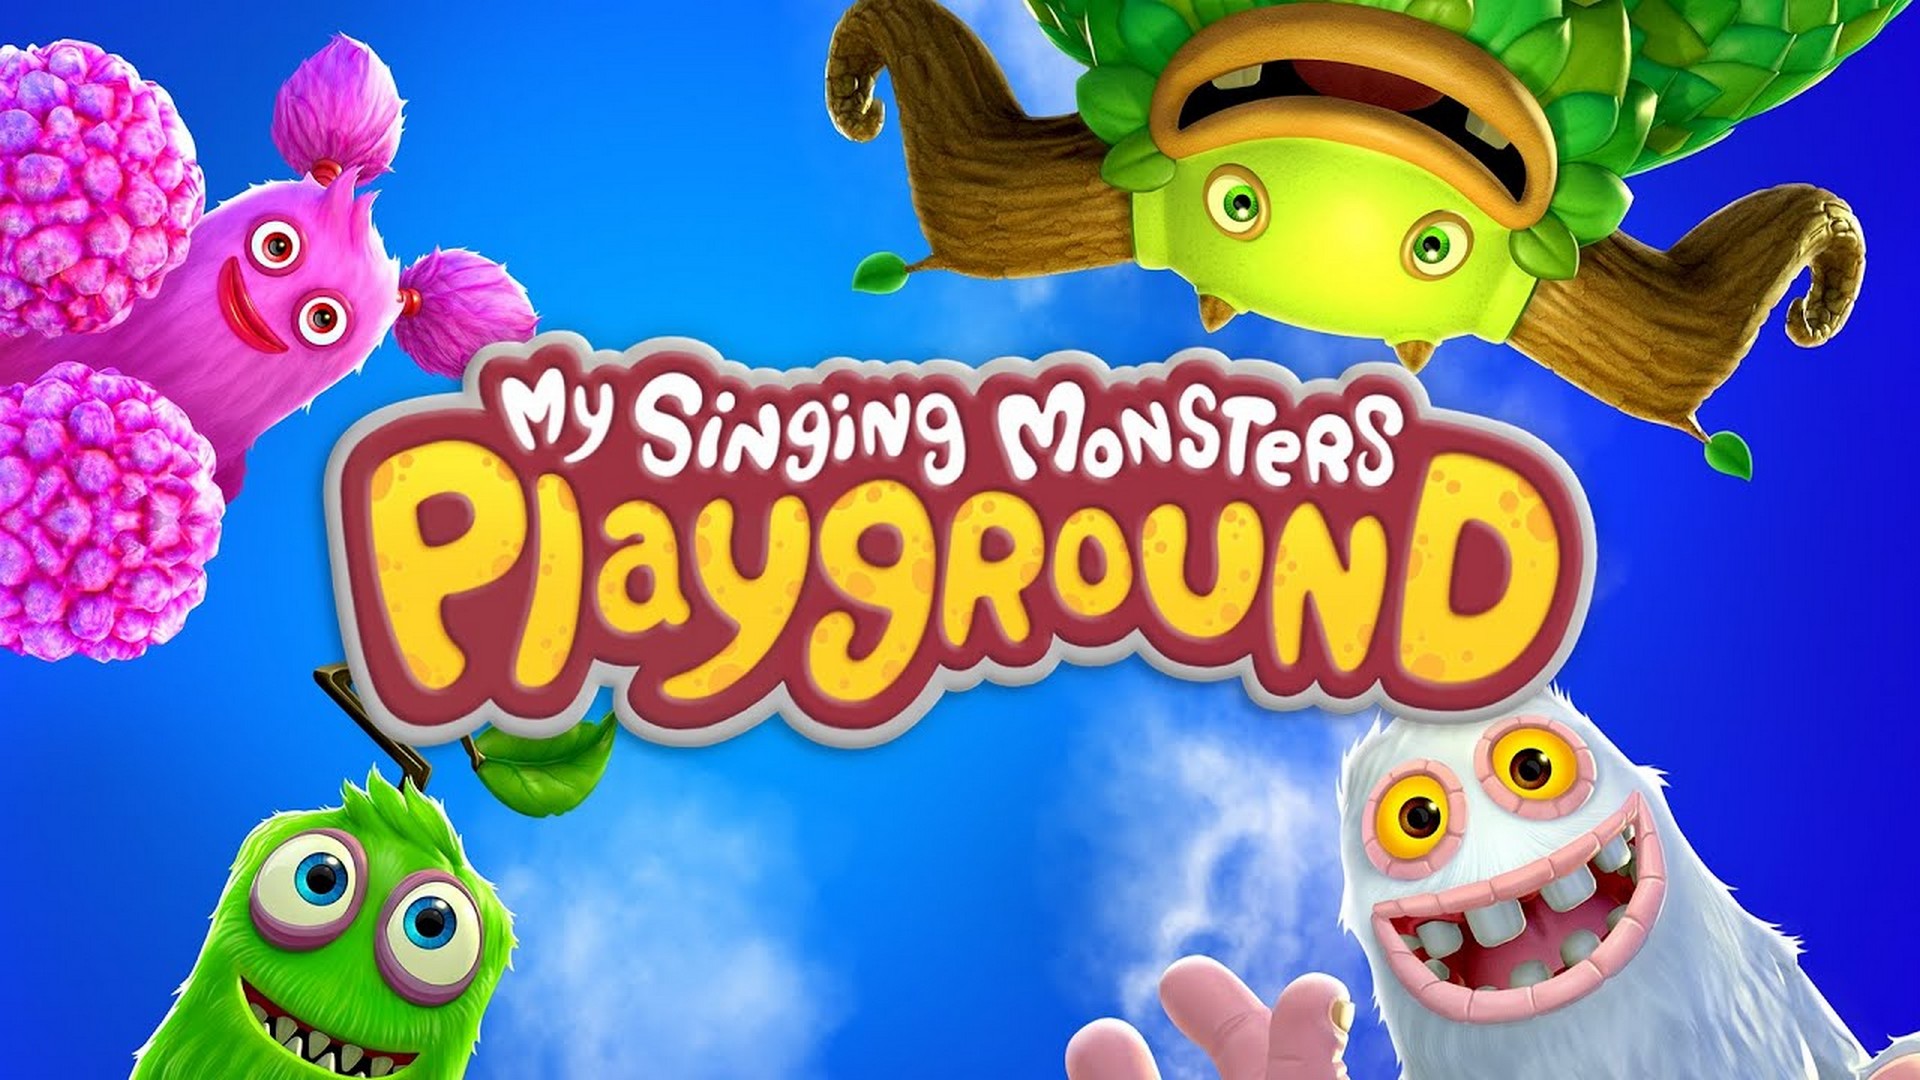 Playground вышло обновление. Май сингинг Монстер. Поющие монстры игра. My singing Monsters плейграунд. My singing Monsters Playground.